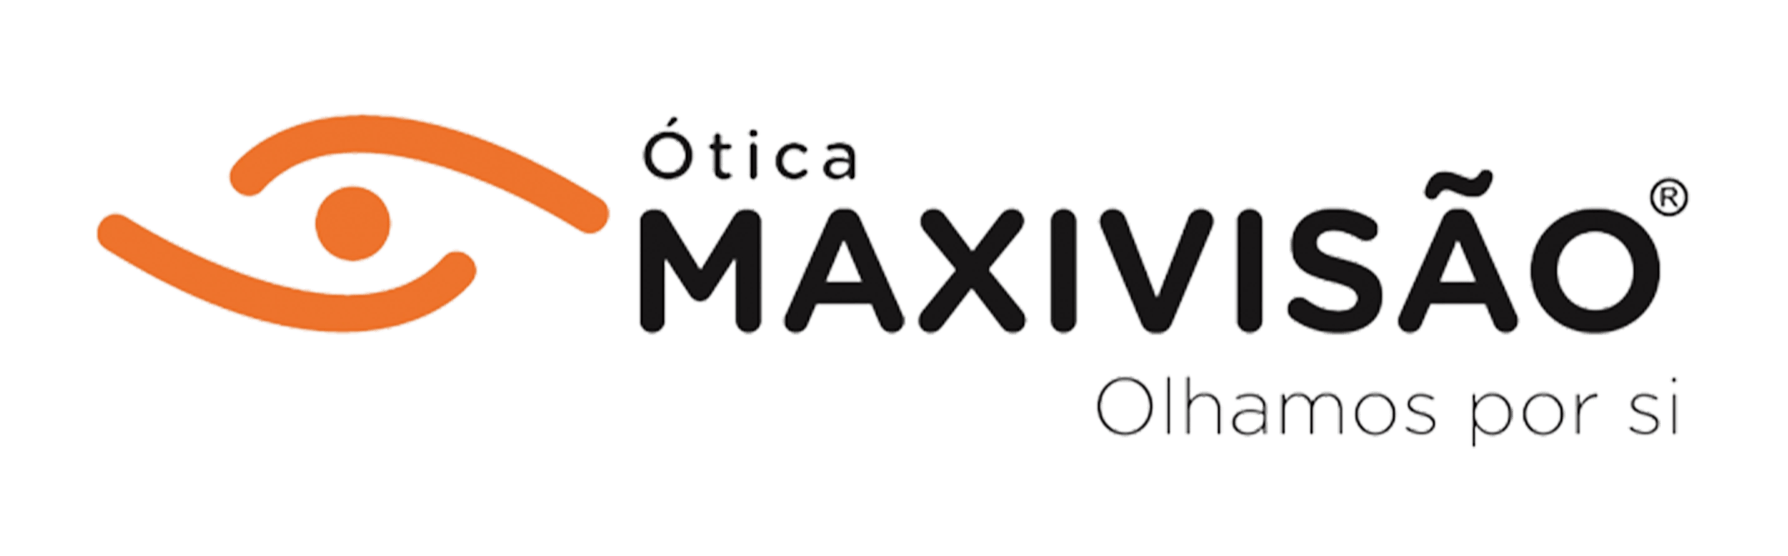 Ótica Maxivisão - Carvalho & Martins Lda